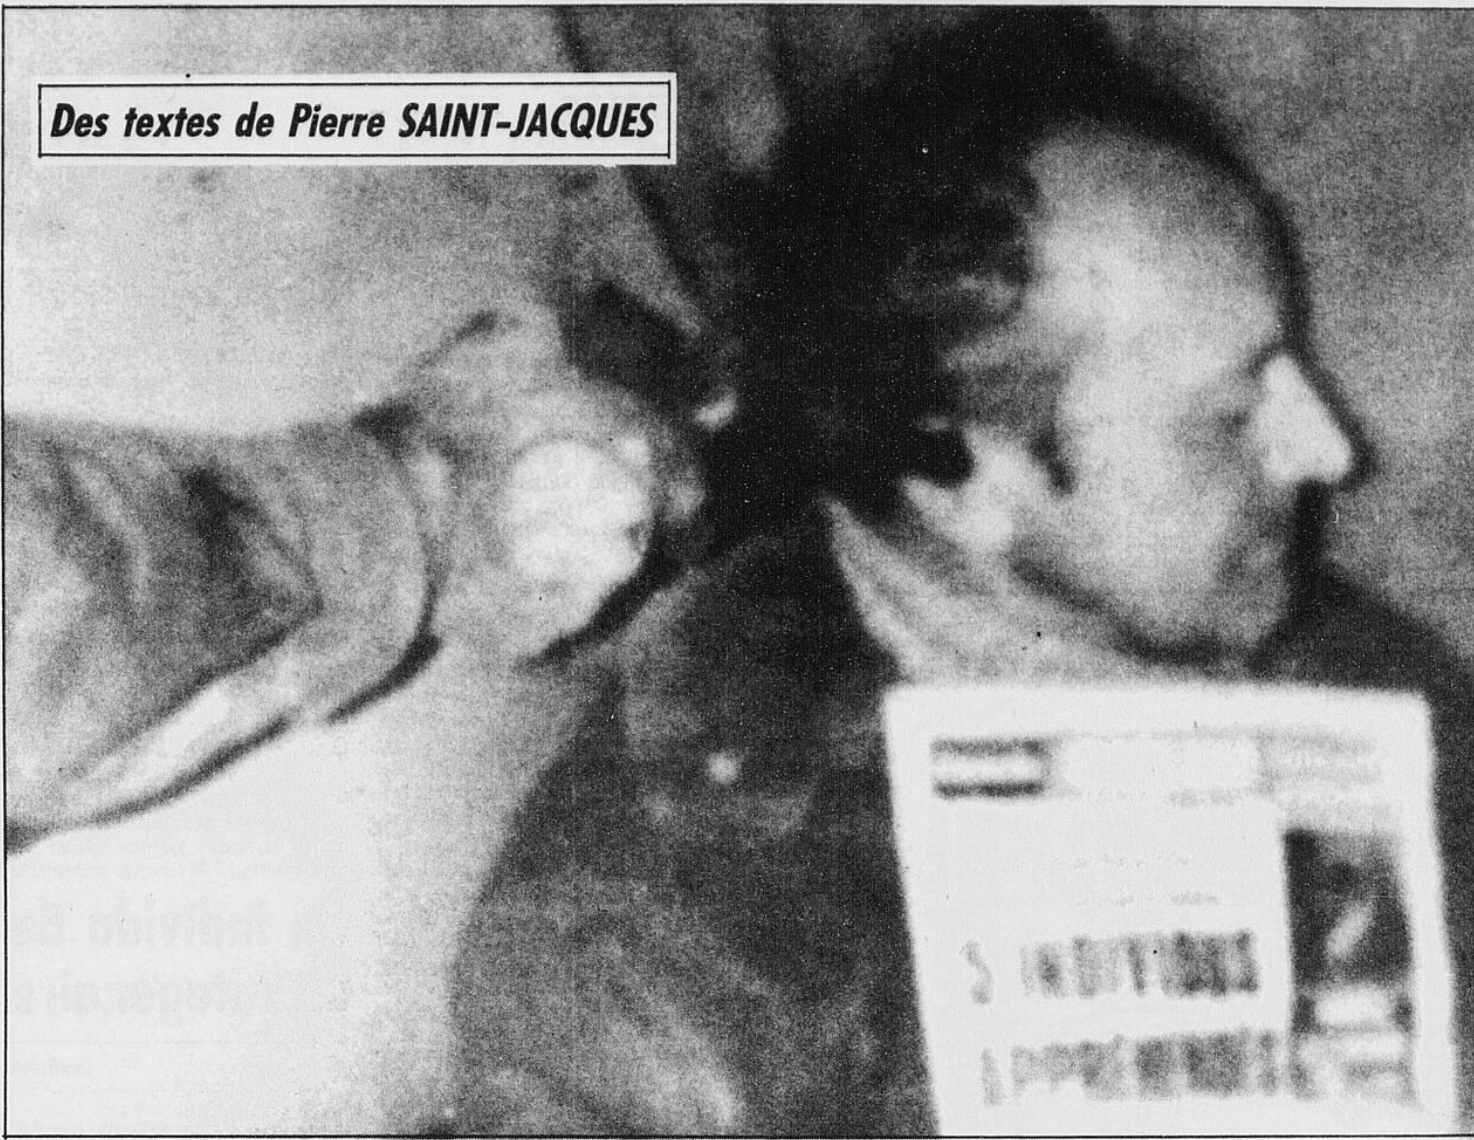  Une des premières photos envoyées par les ravisseurs: Charles Marion fusil à la tempe. Source : Journal La Tribune, 6 août 1992 (BanQ) 